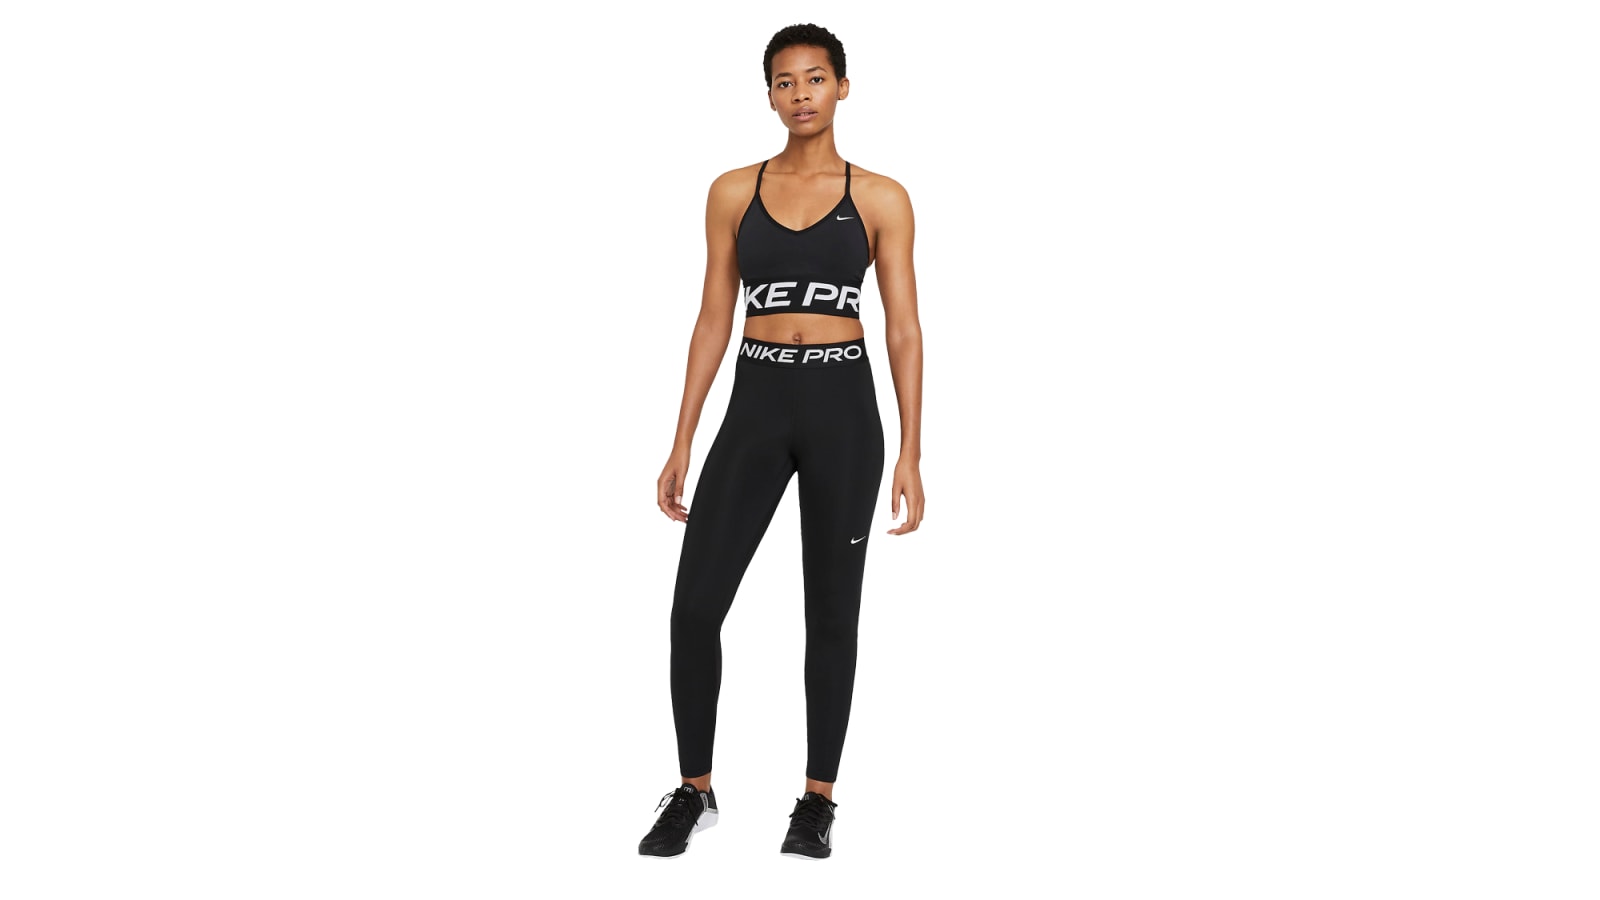 Nike Women's Pro Training 365 Hi Rise Legging - BLACK/WHITE